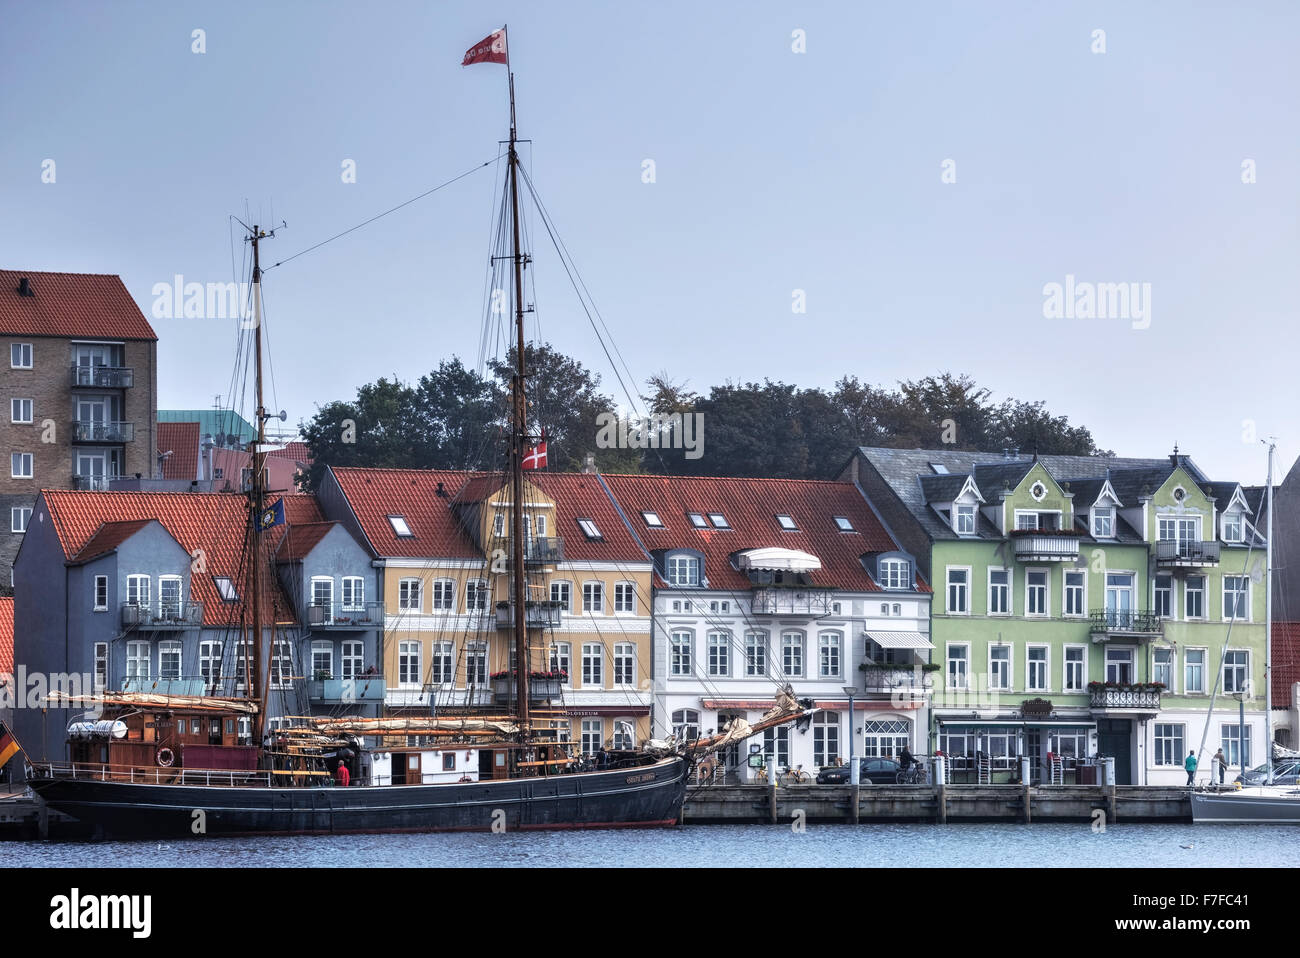 Sonderborg, Syddanmark, Jutlandia, Dinamarca Foto de stock